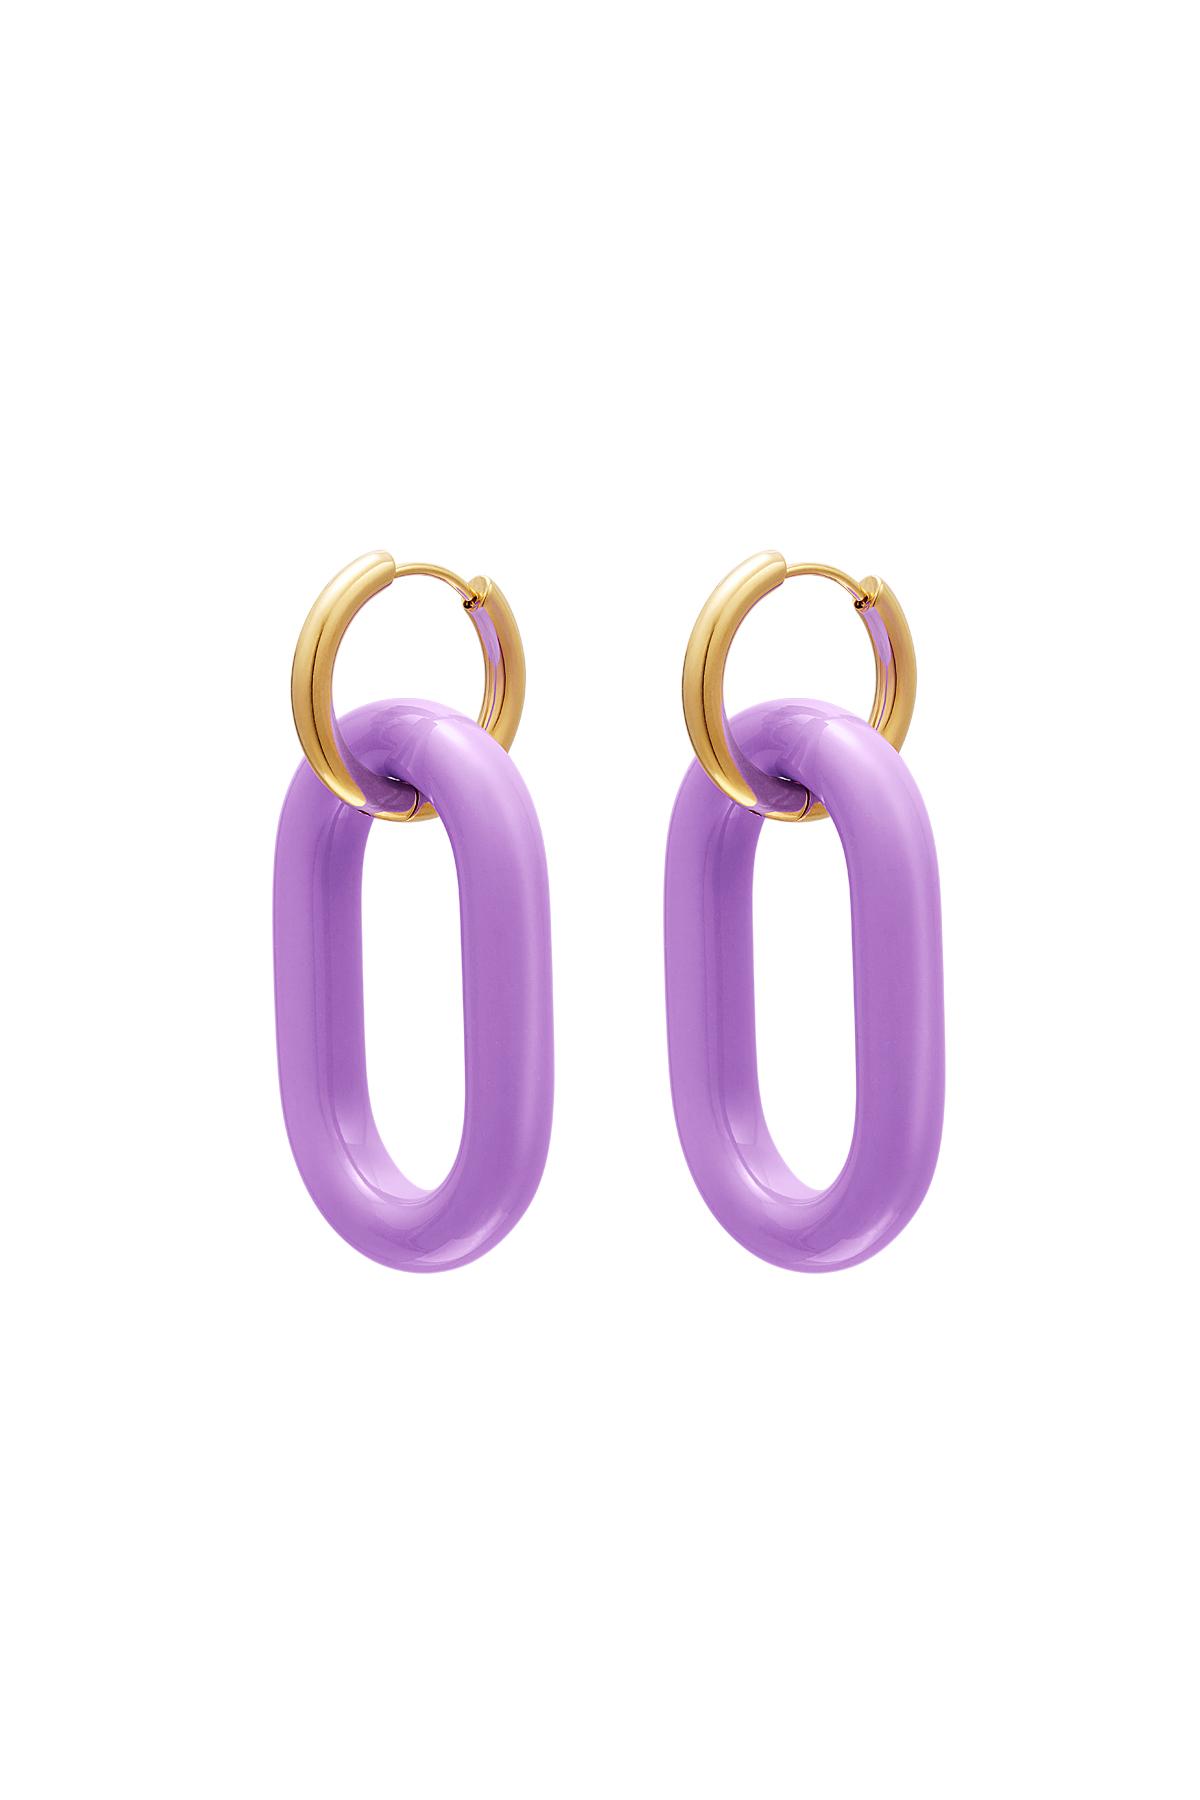 Renkli çapa bağlantılı küpeler - #summergirls koleksiyonu Purple Stainless Steel